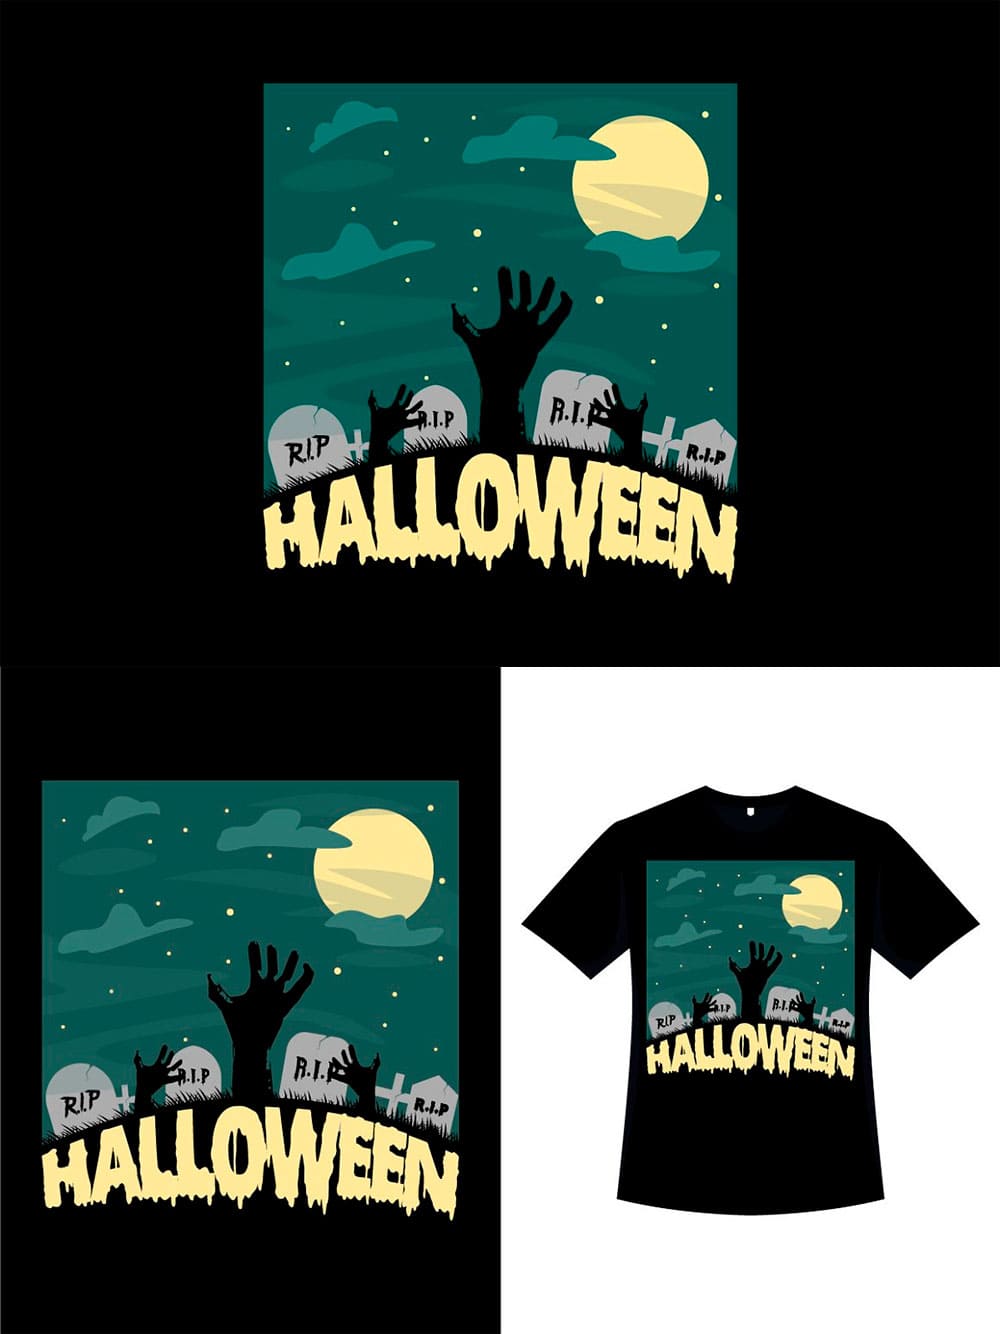 Graveyard shirt design for halloween, image for pinterest 1000x1334.